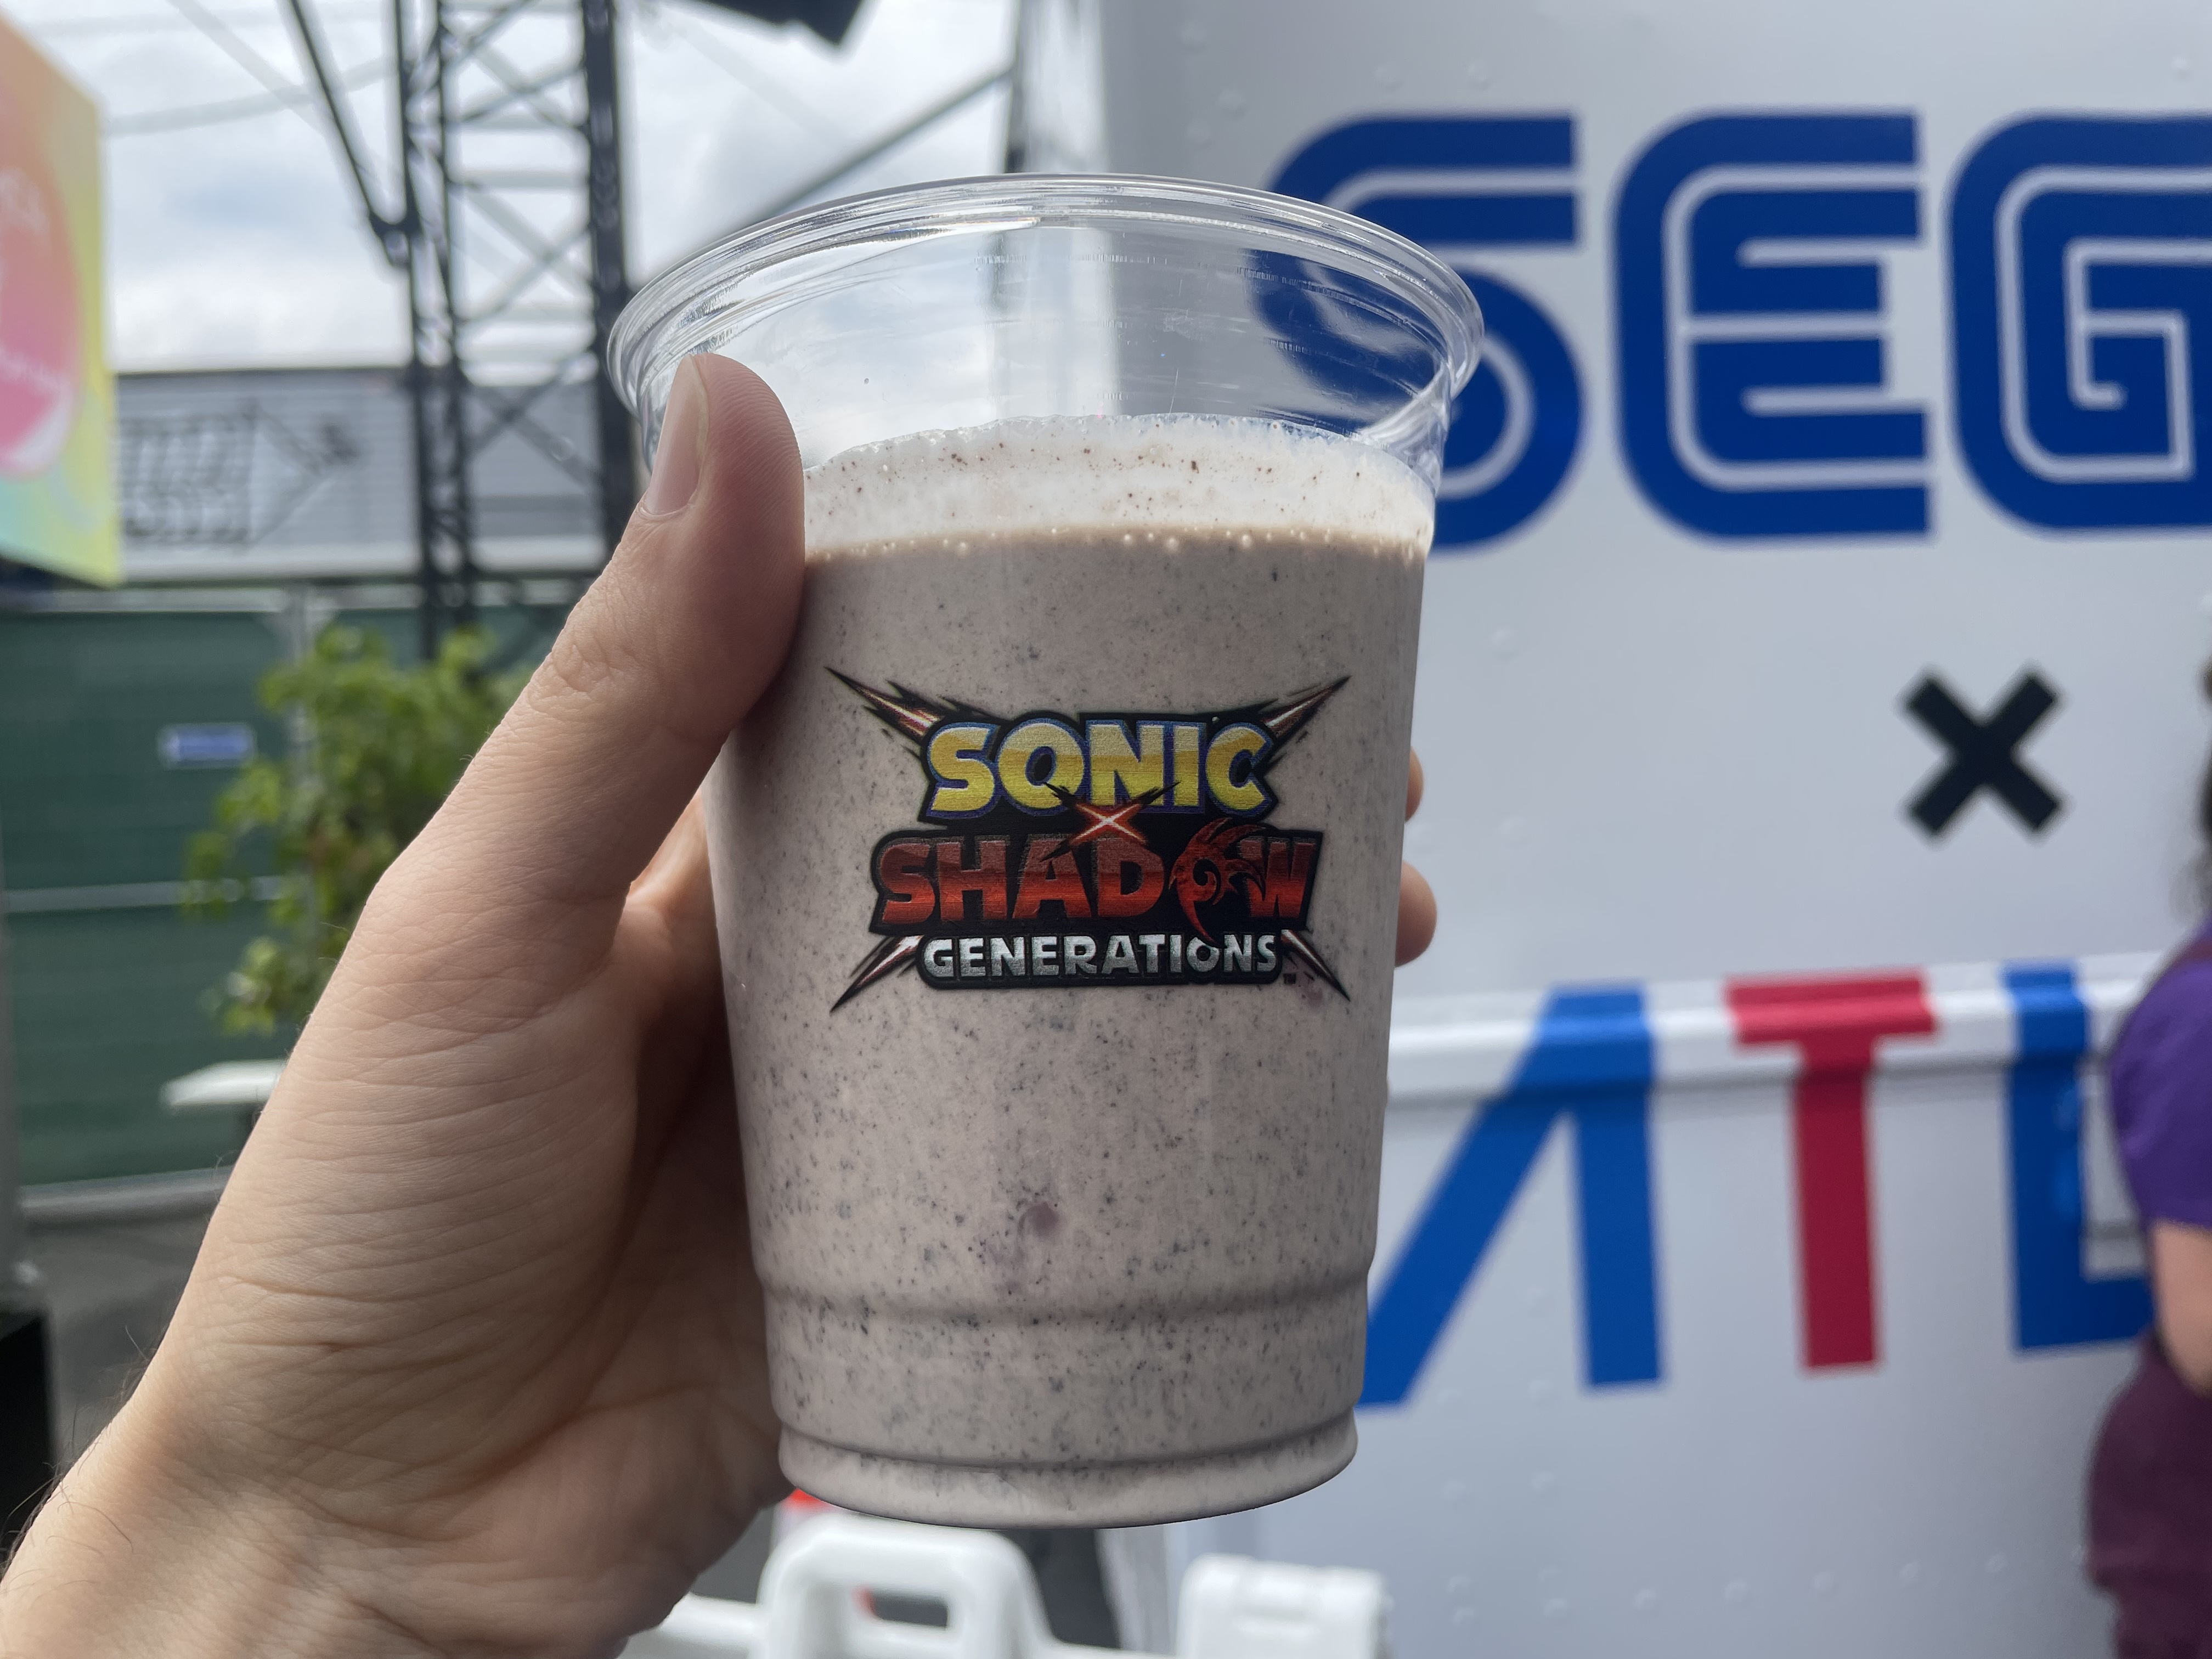 Мы приступили к разработке Sonic X Shadow Generations (молочного коктейля).